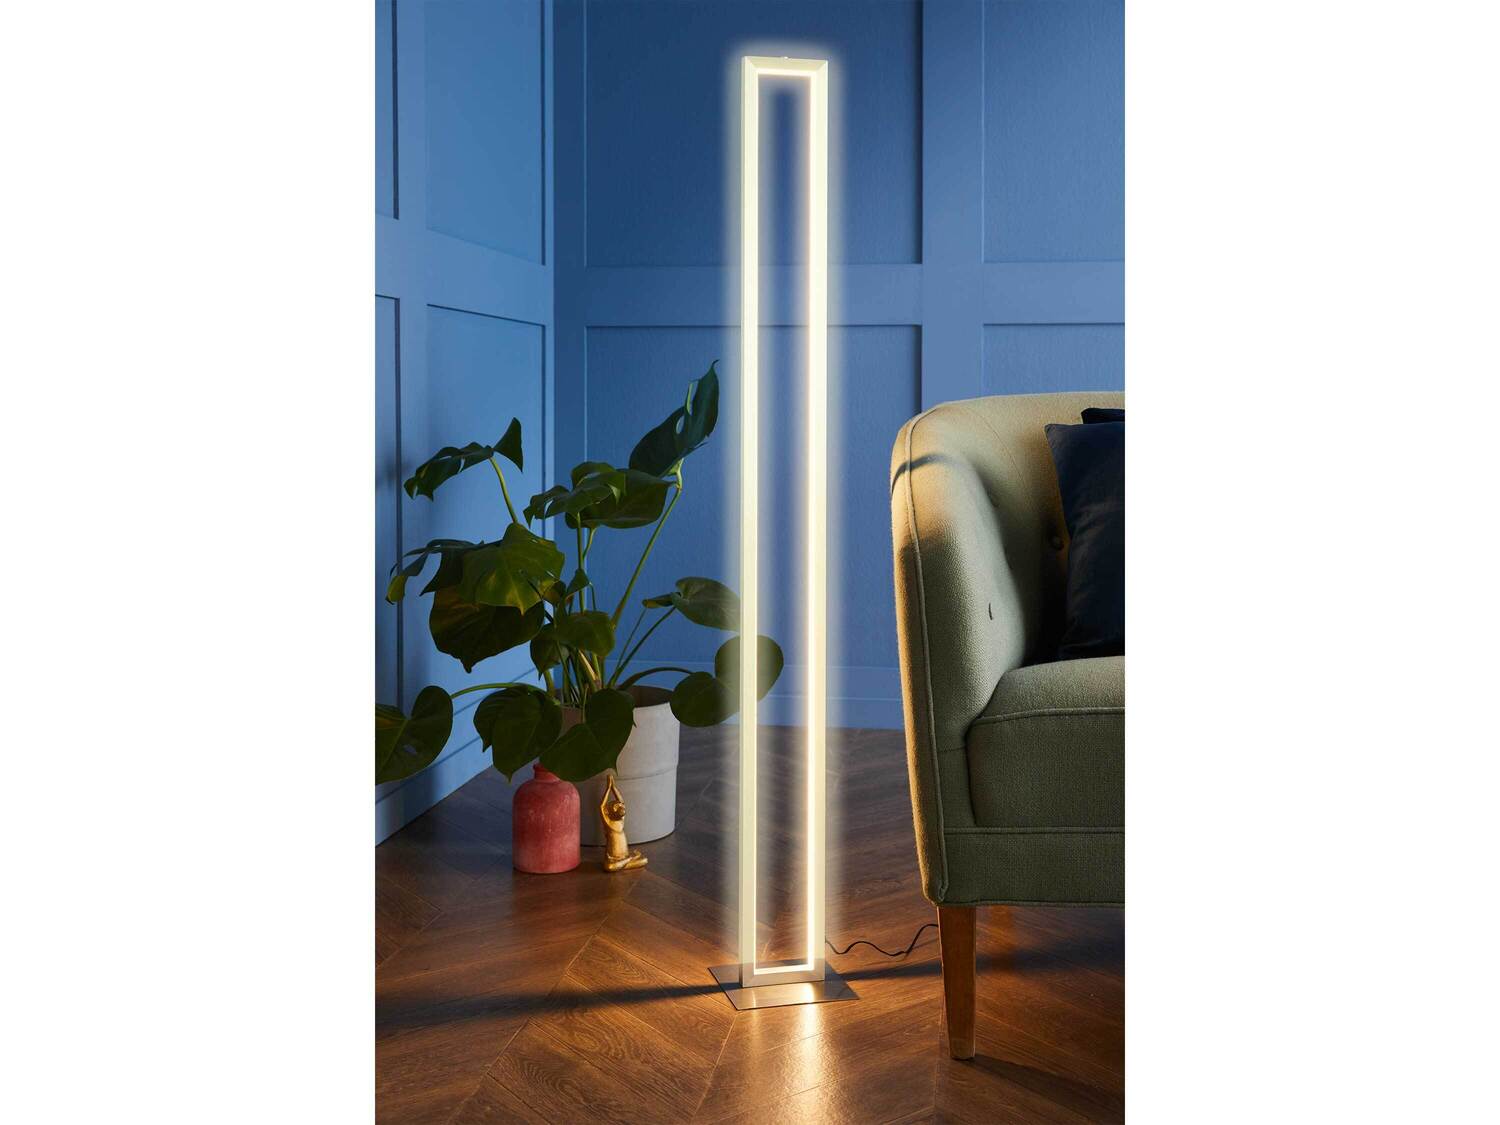 Lampa podłogowa LED , cena 149,00 PLN 
- dł. kabla sieciowego: 1,8 m
- przyciemnianie ...